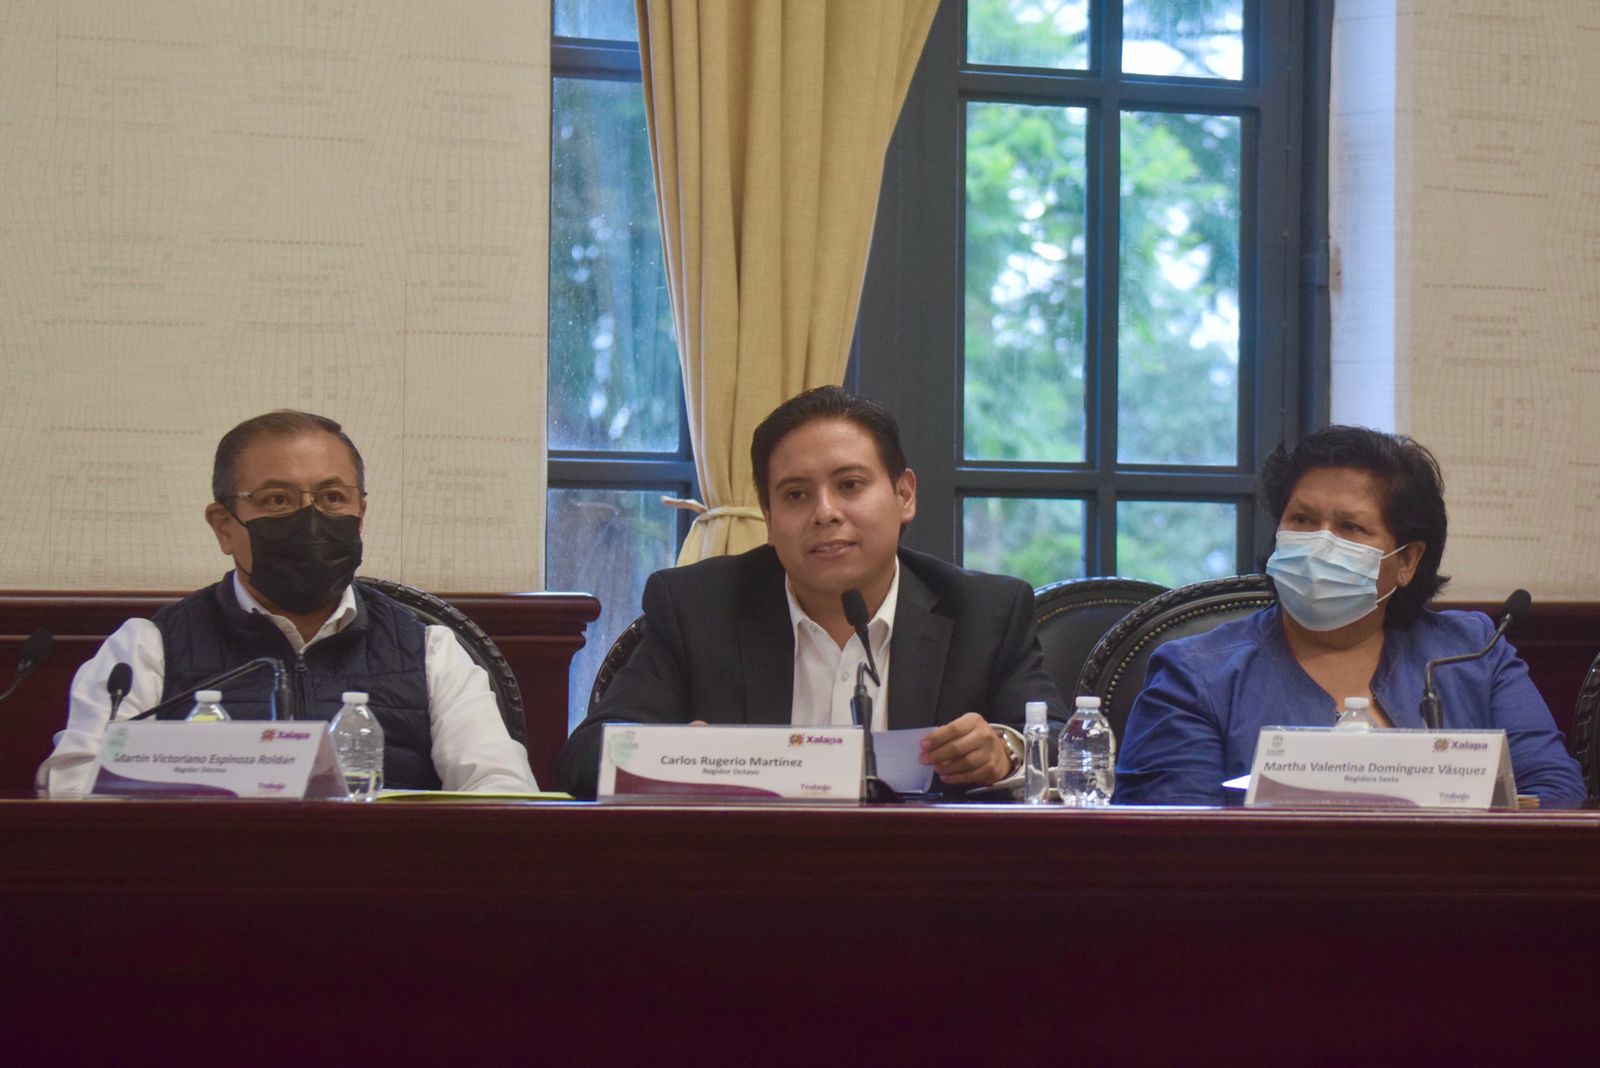 En Xalapa hay jóvenes valiosos, juventudes que quieren ser escuchadas y testigos de los cambios: Carlos Rugerio Martínez